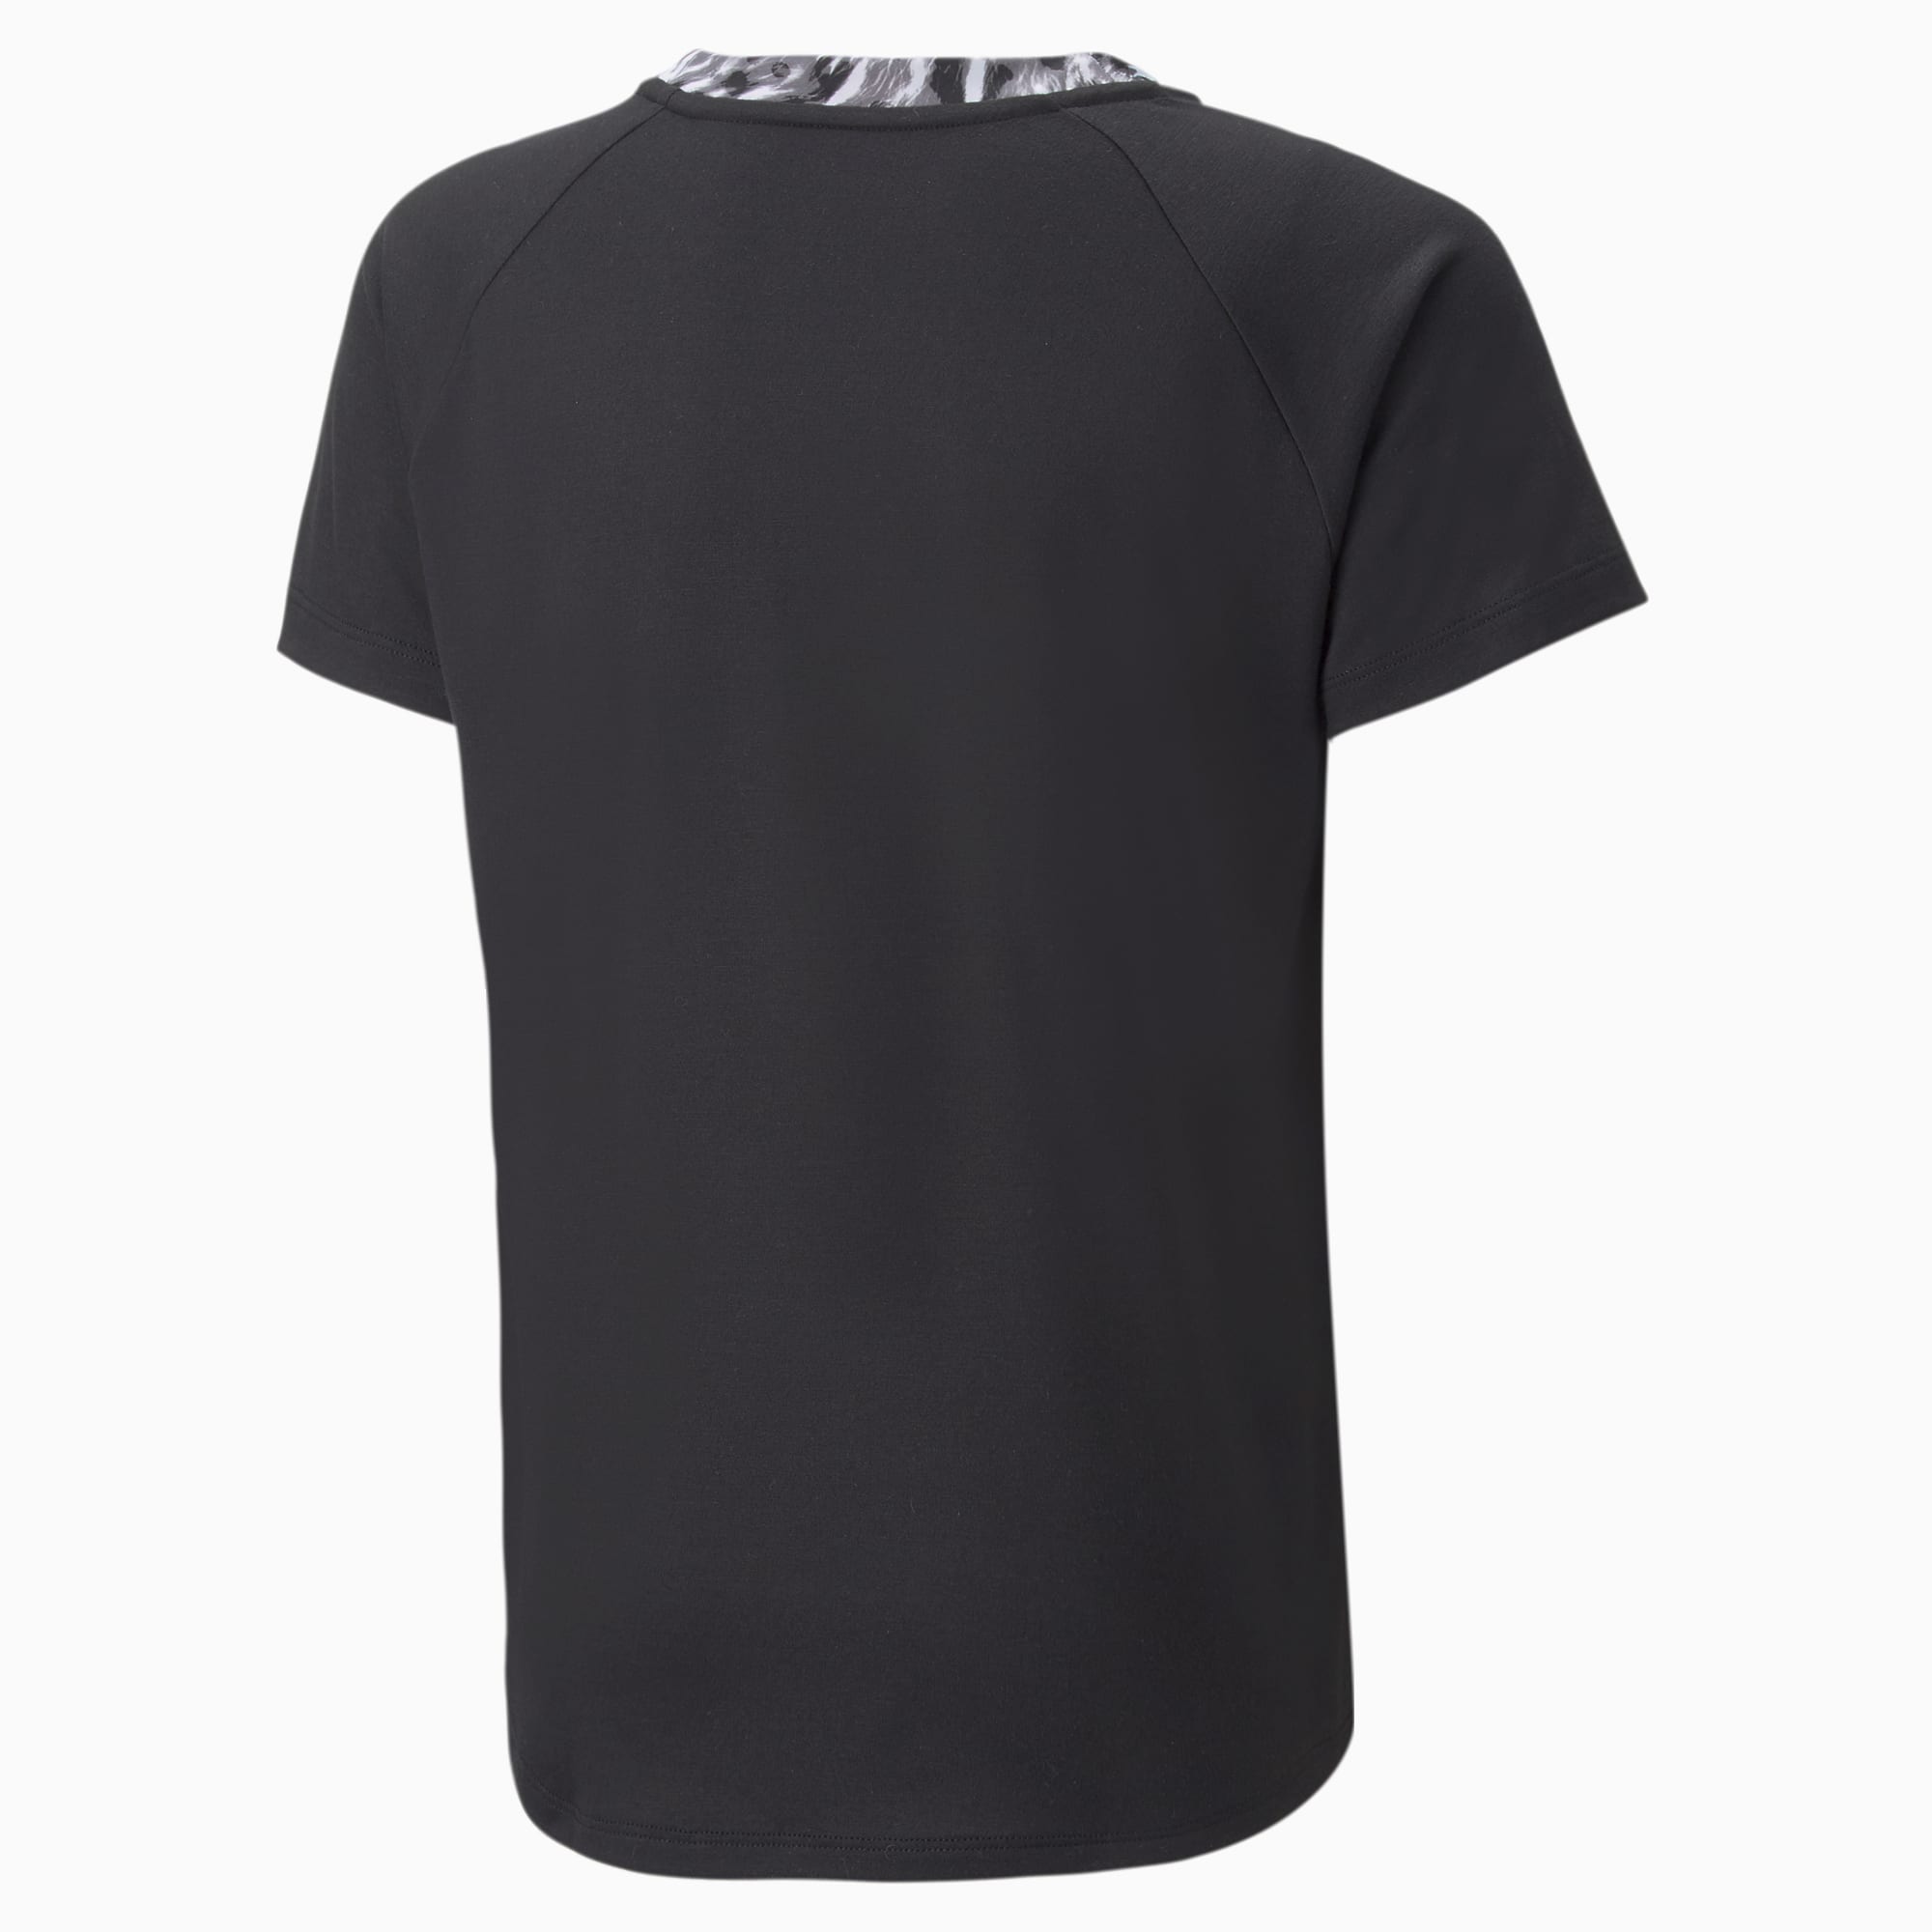 Puma Safari Glam T-Shirt Black